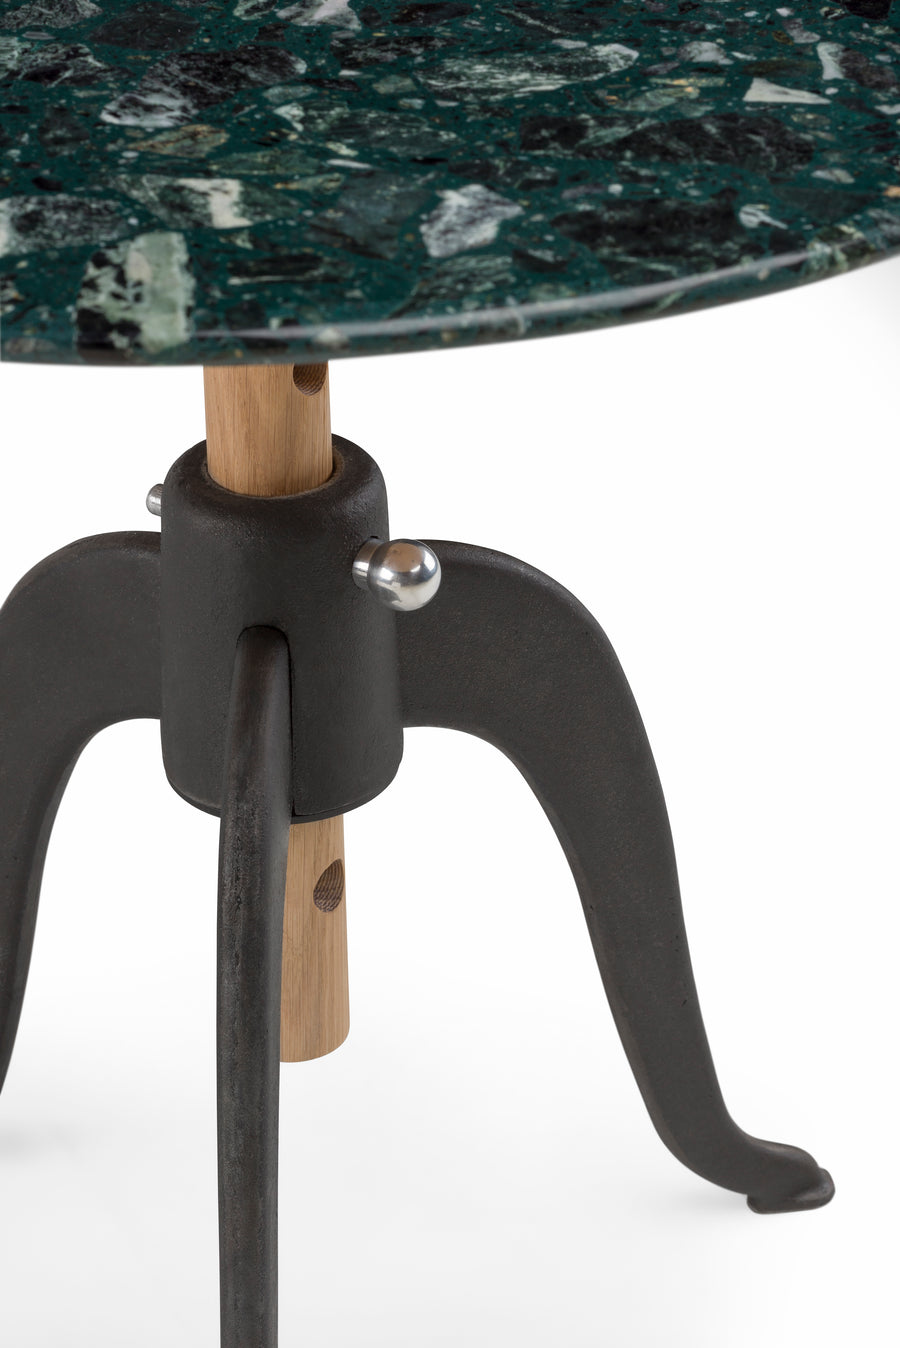 Sidekicks Height Adjustable Table with Terrazzo Top